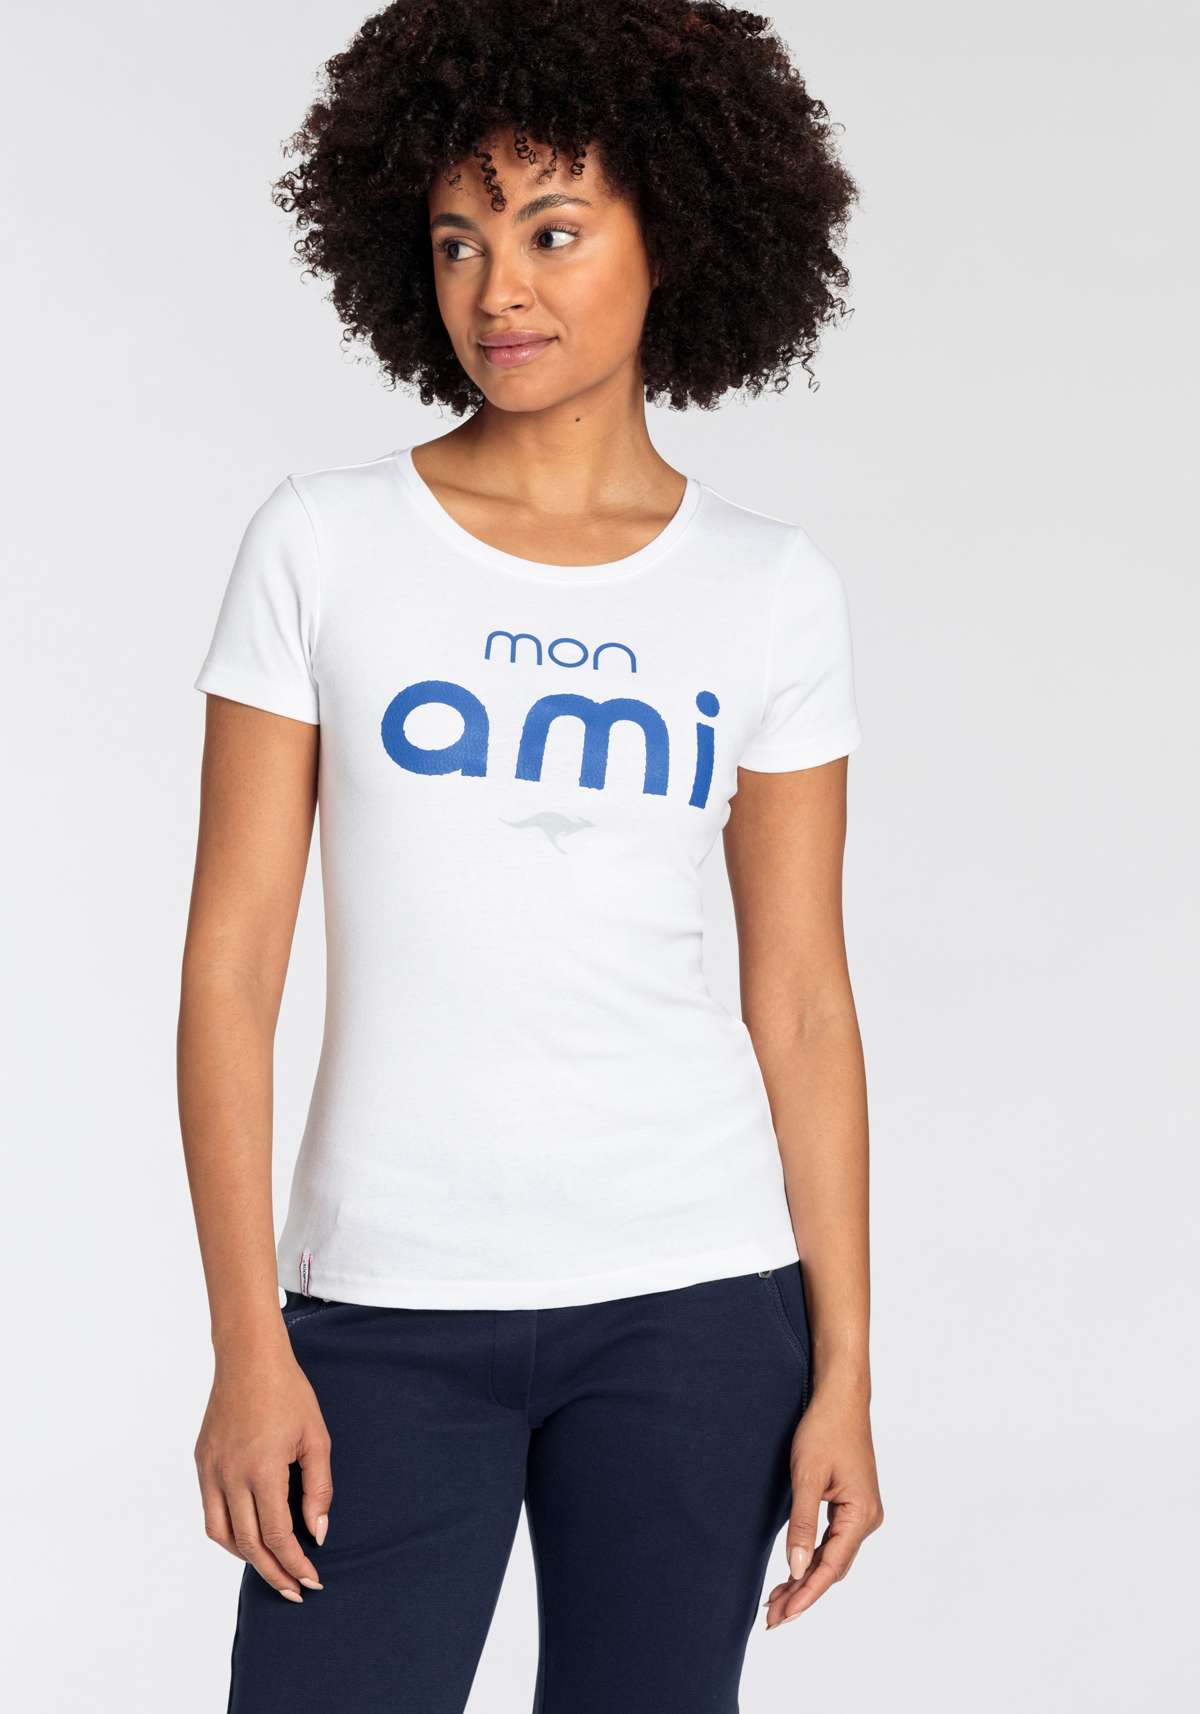 Американская рубашка, рубашка с логотипом и модным пышным принтом - НОВАЯ КОЛЛЕКЦИЯ